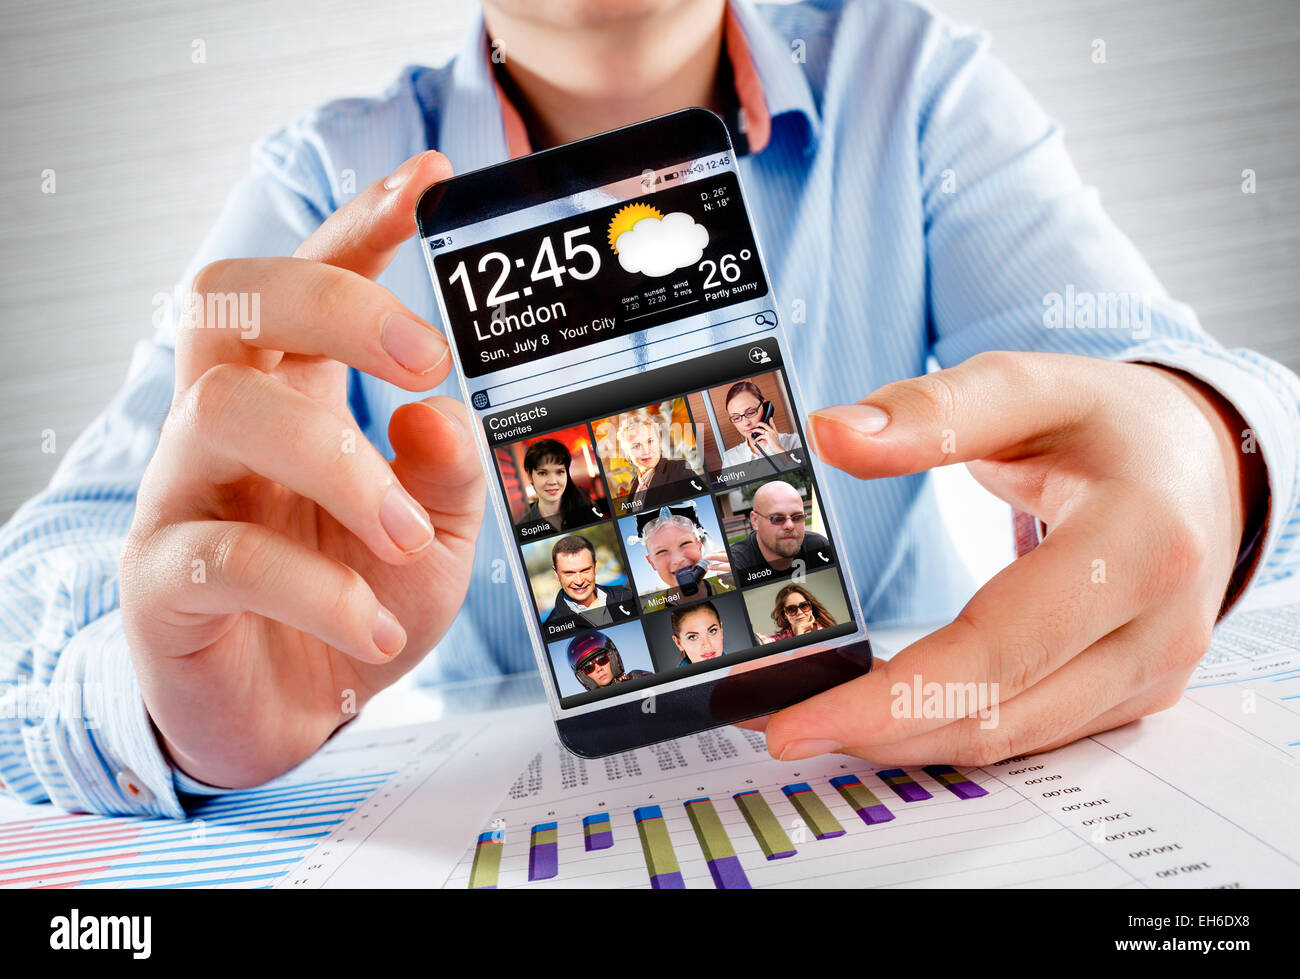 Teléfono inteligente (phablet futurista) con una pantalla transparente en manos humanas. Concepto Futuro real ideas innovadoras y mejor tech Foto de stock